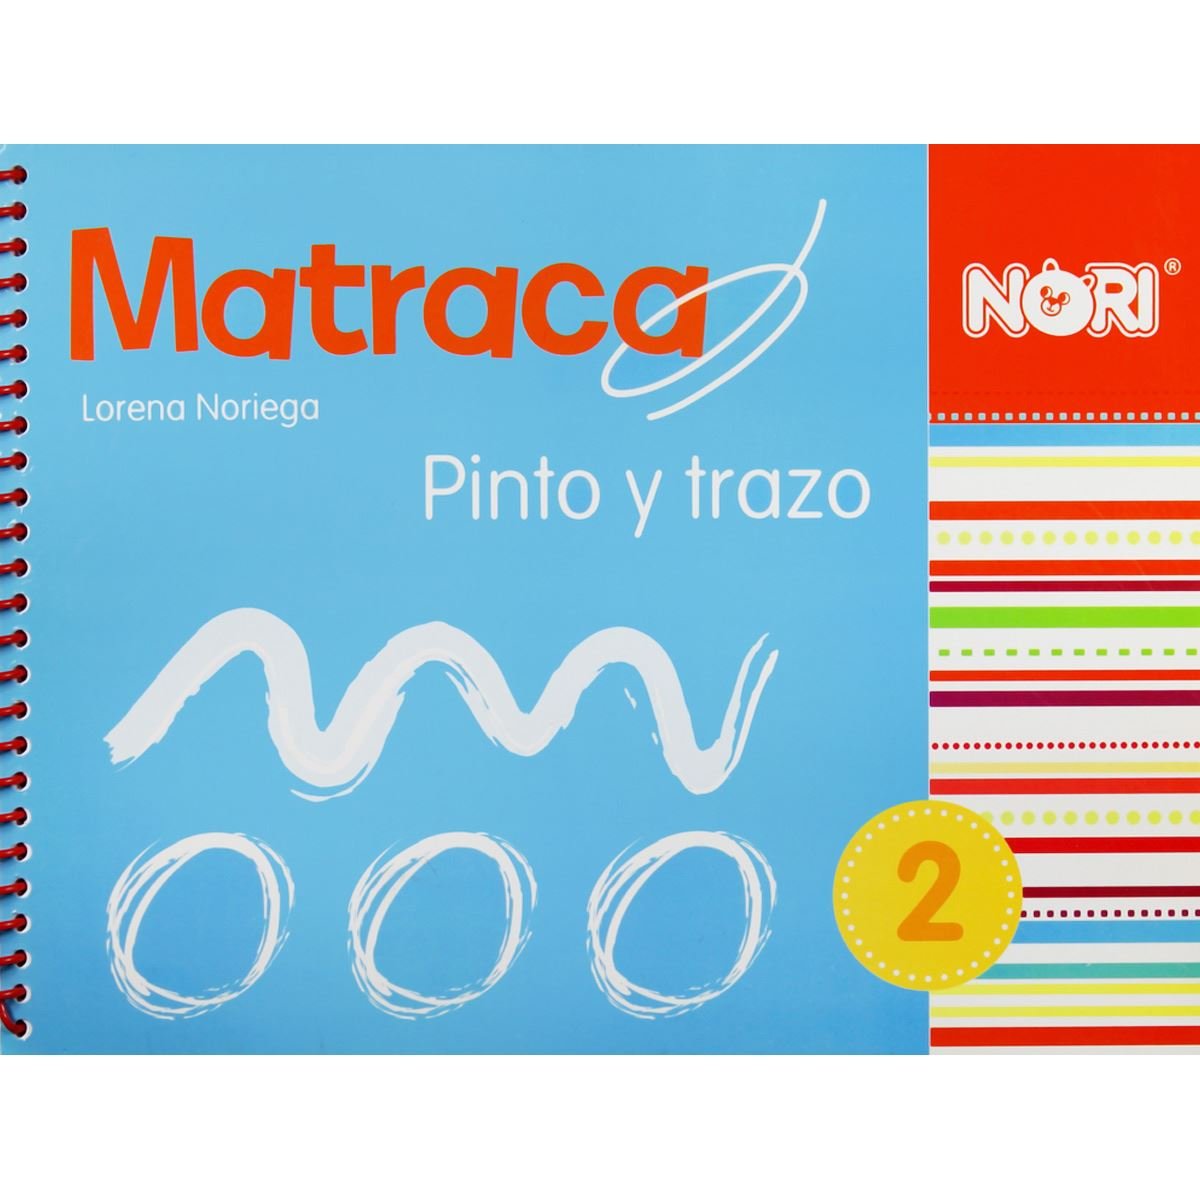 Matraca Pinto Y Trazo 2